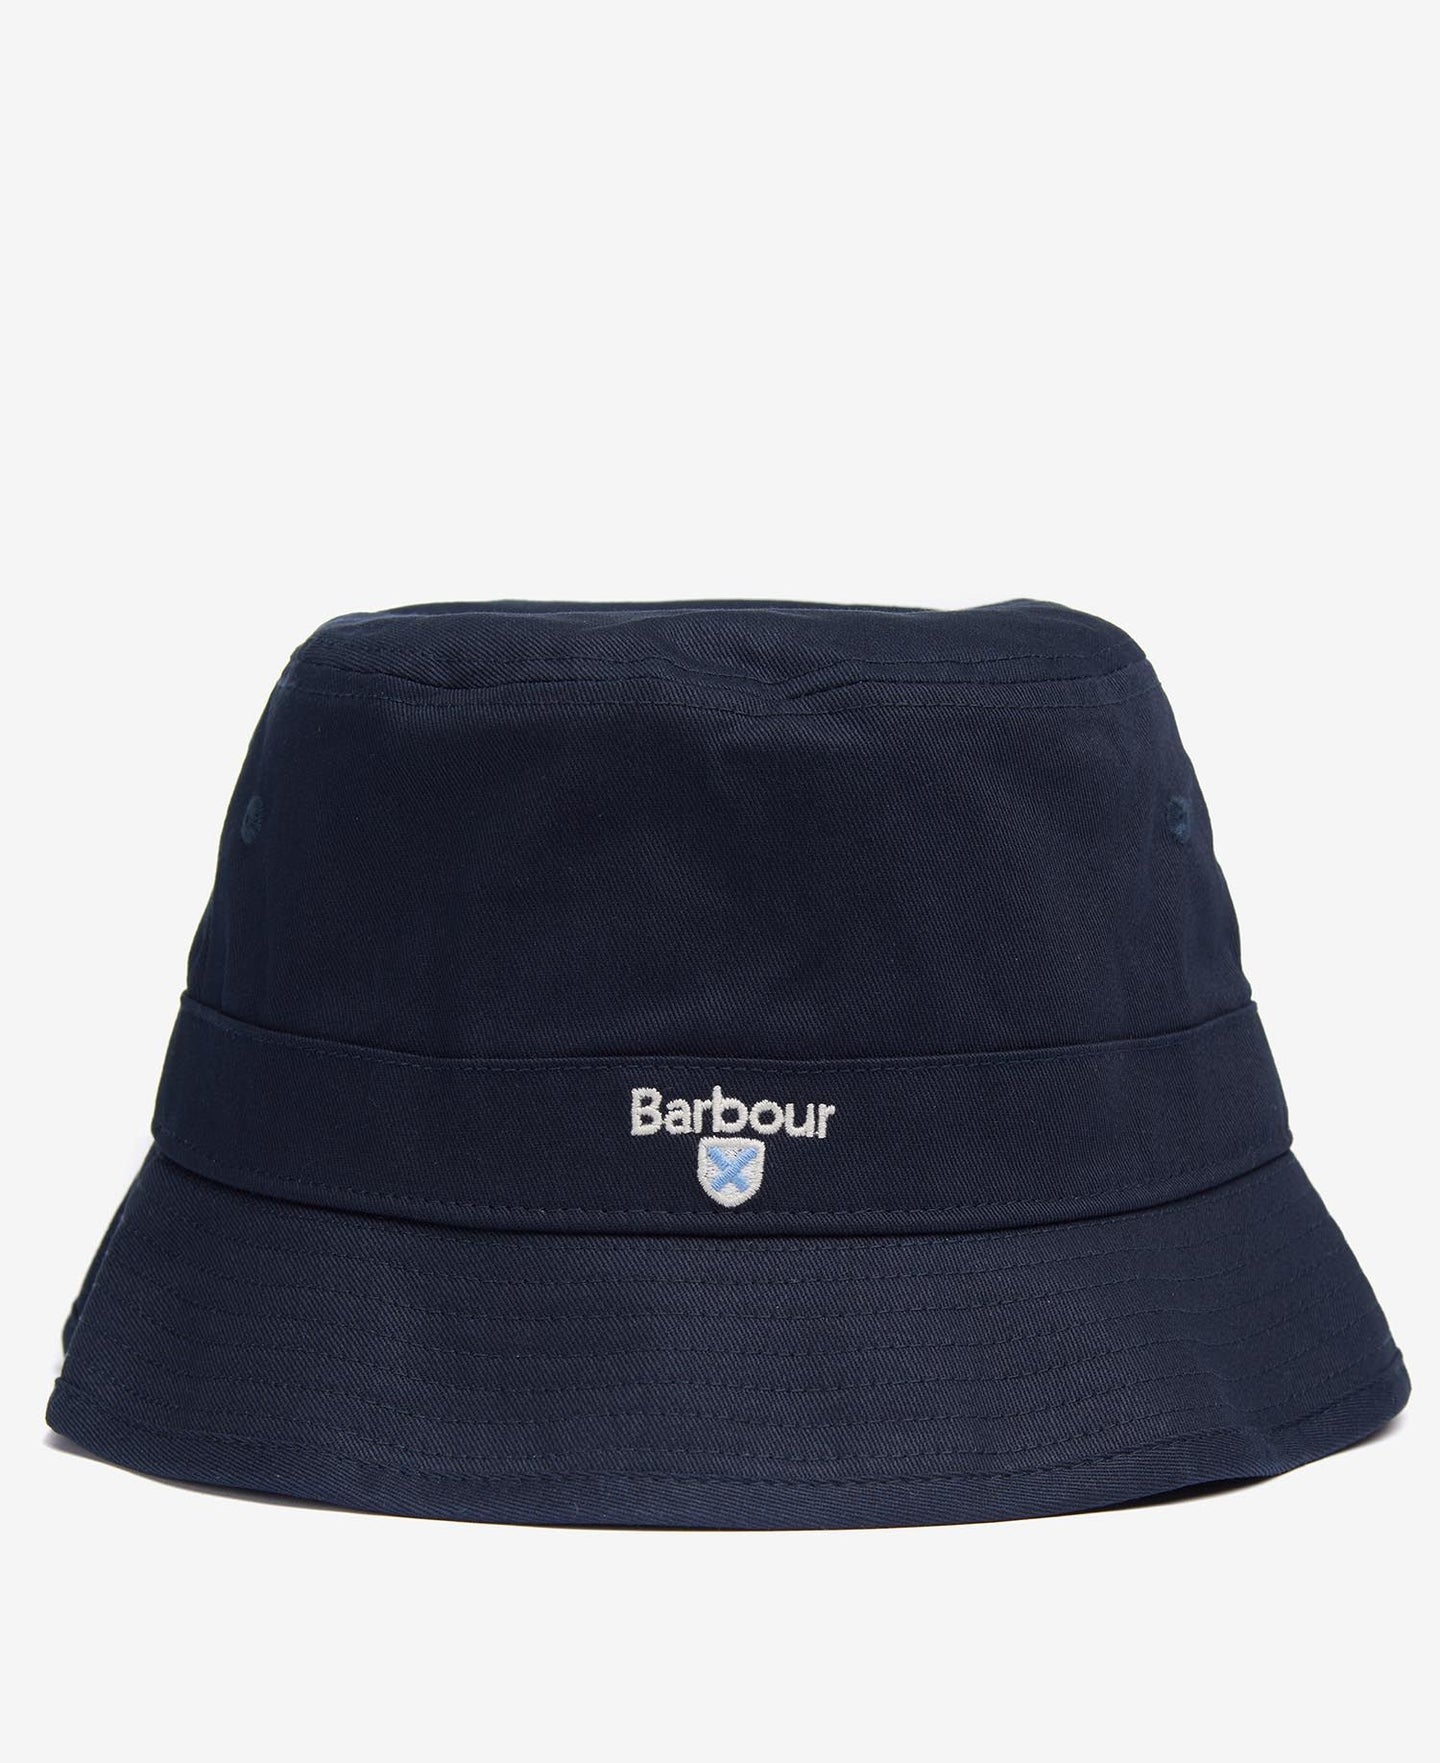 BARBOUR CASCADE BUCKET HAT